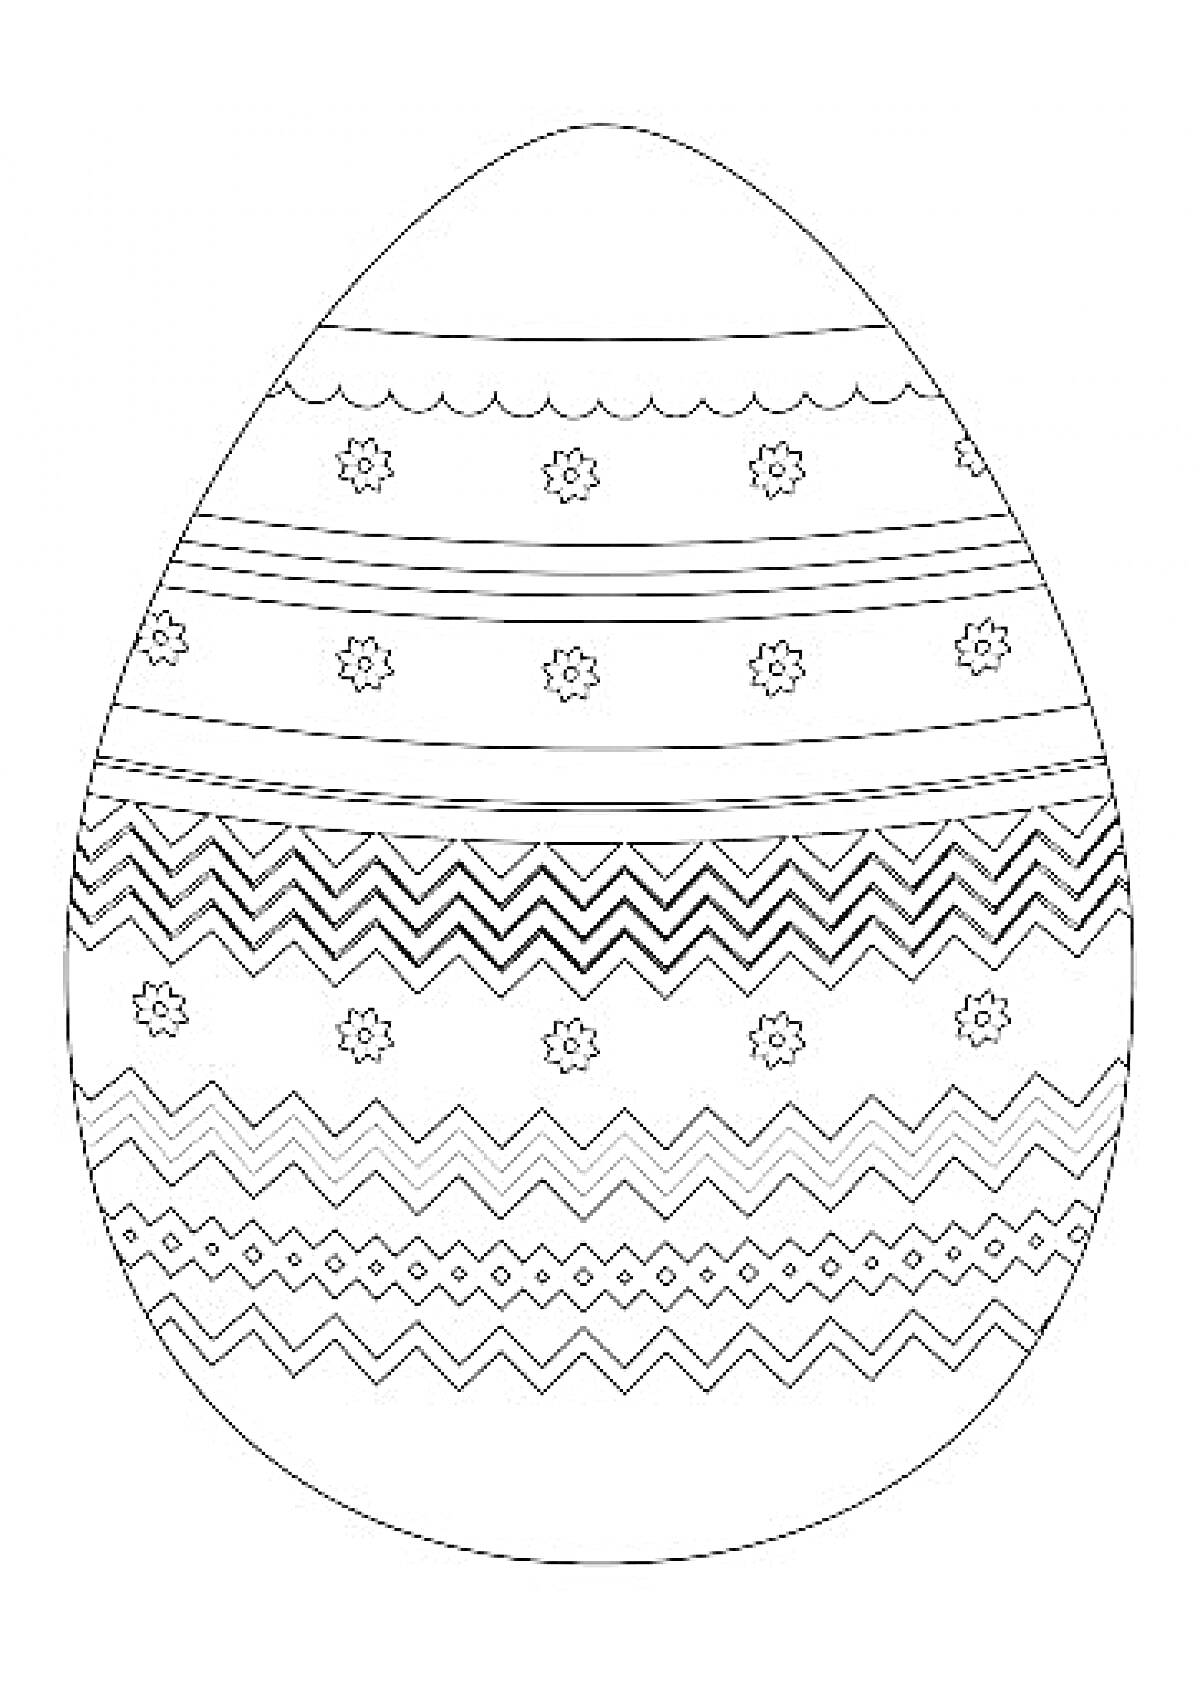 Пасхальное яйцо с цветочными узорами, волнистыми линиями и зигзагами